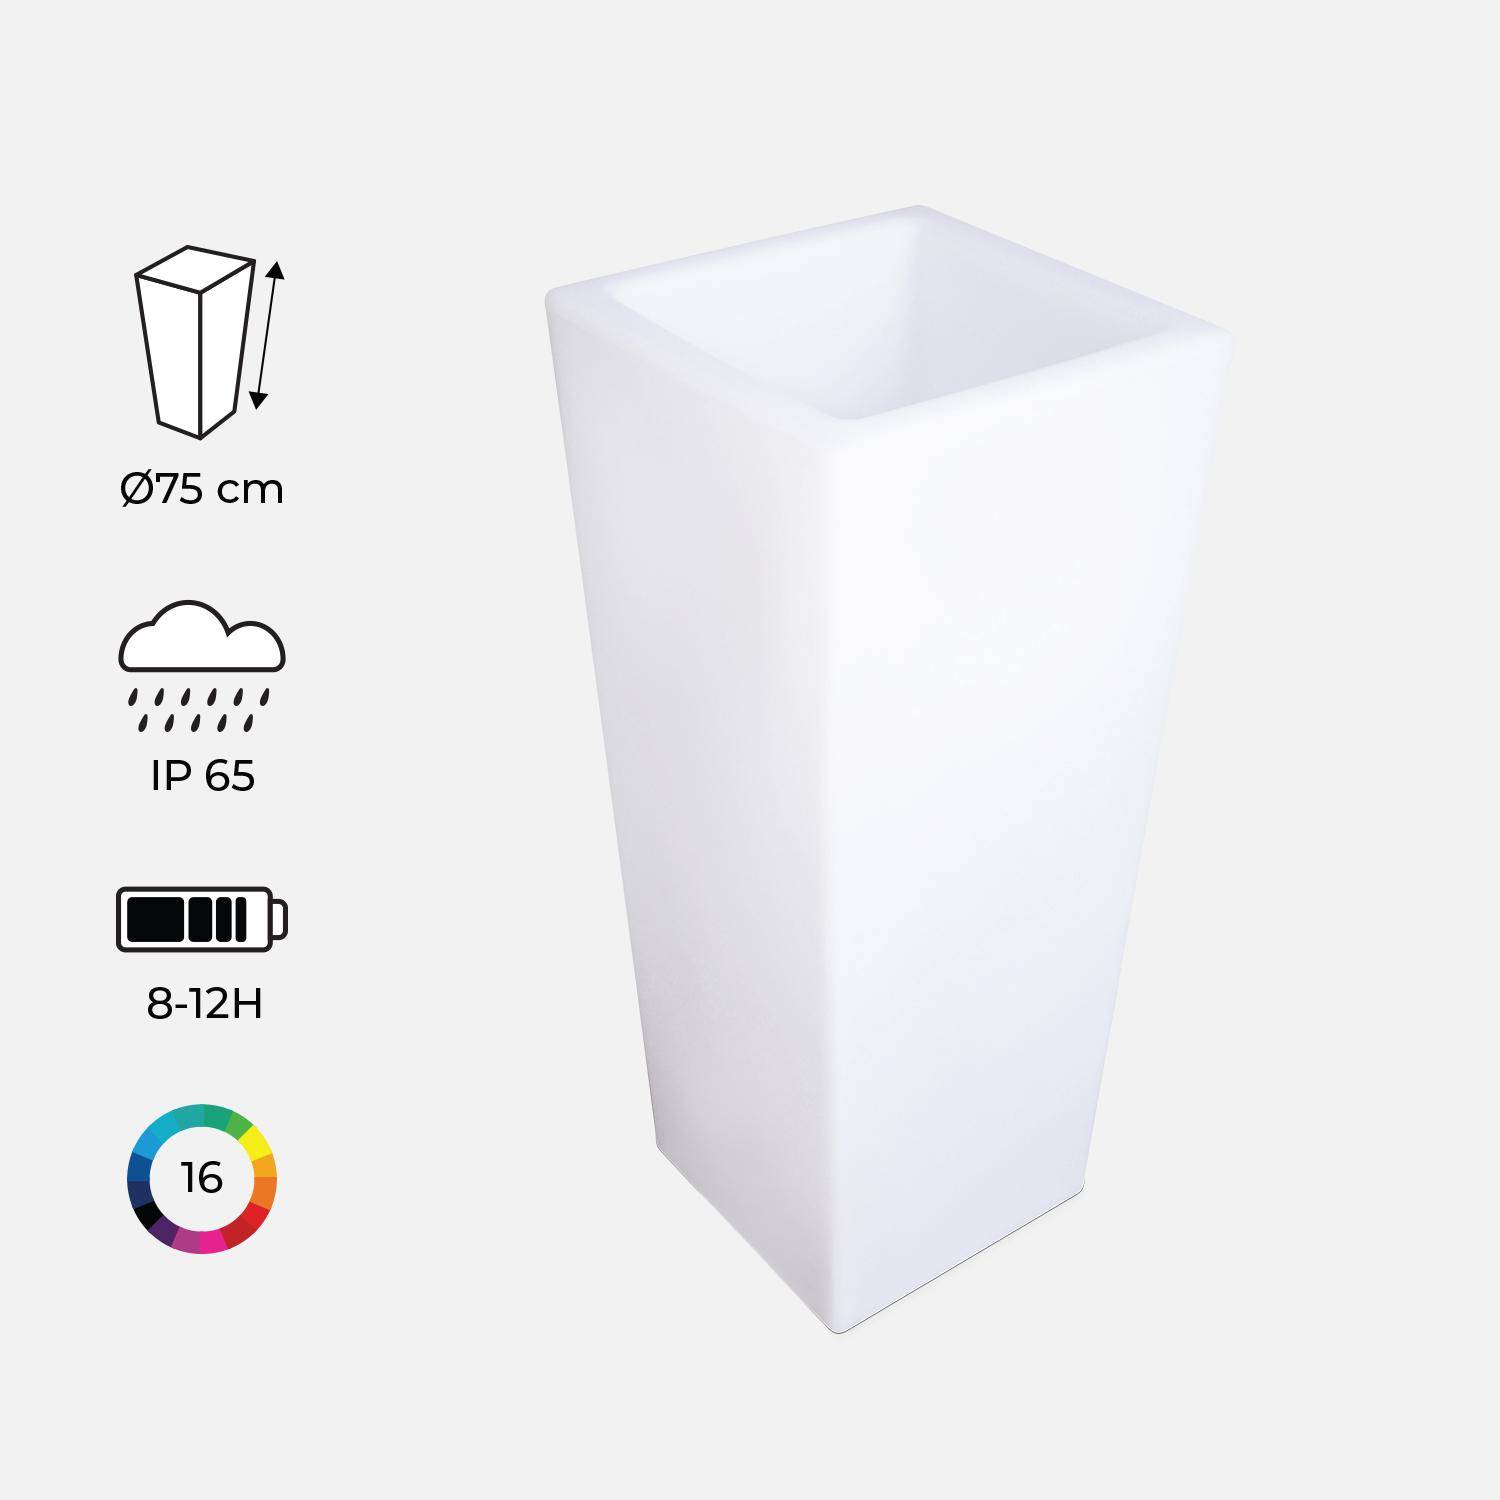 Suporte para vasos de iluminação LED multicolor e recarregável, para exterior  - 16 cores  - Suporte para vasos 75 cm Photo2